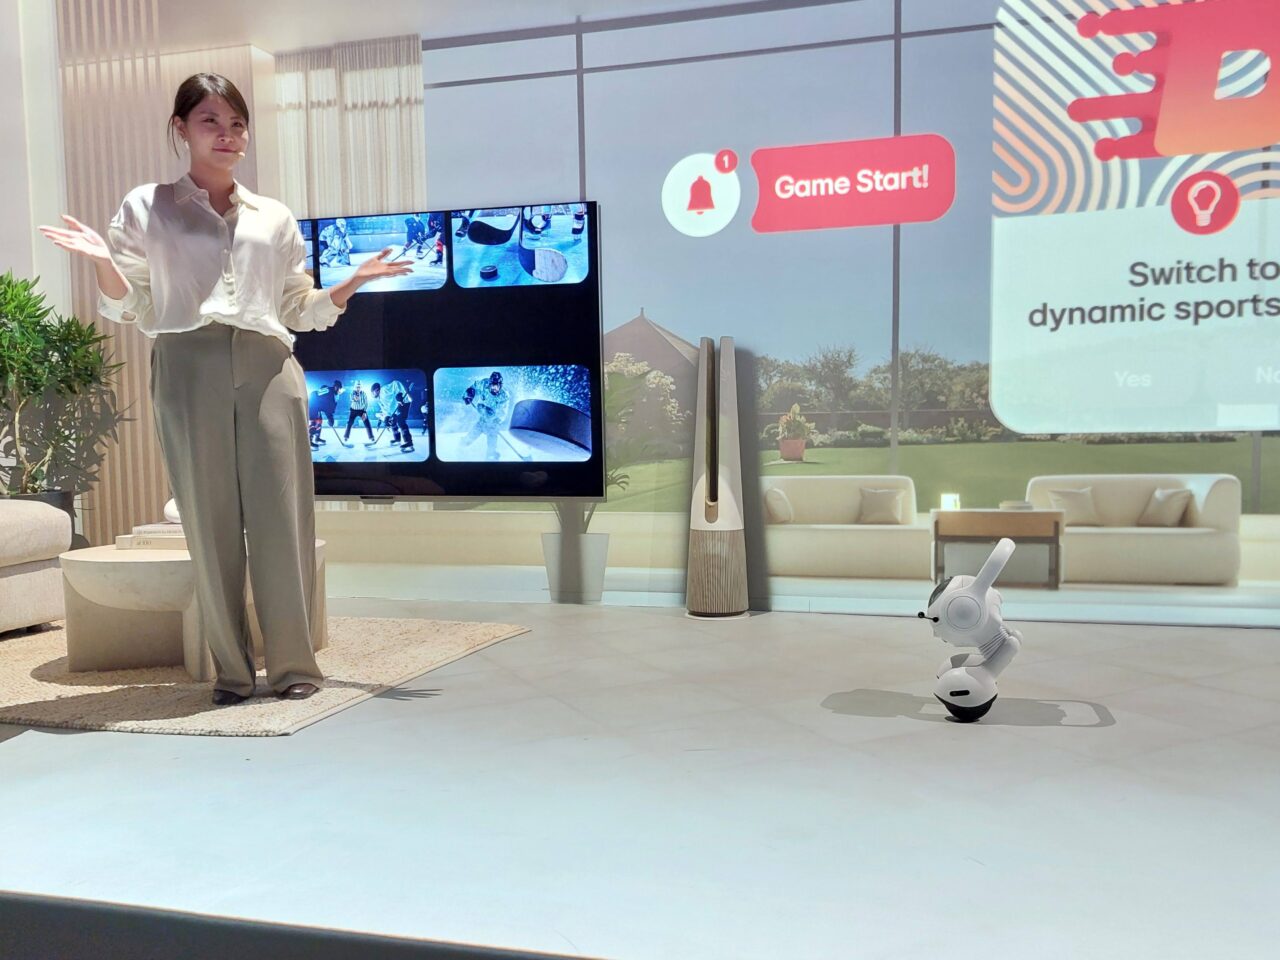 Kobieta prezentuje wnętrze z dużym telewizorem wyświetlającym obrazy sportowe, obok widoczny jest robot LG AI Agent, a w tle wyświetlana jest animowana grafika z opcją "Game Start".